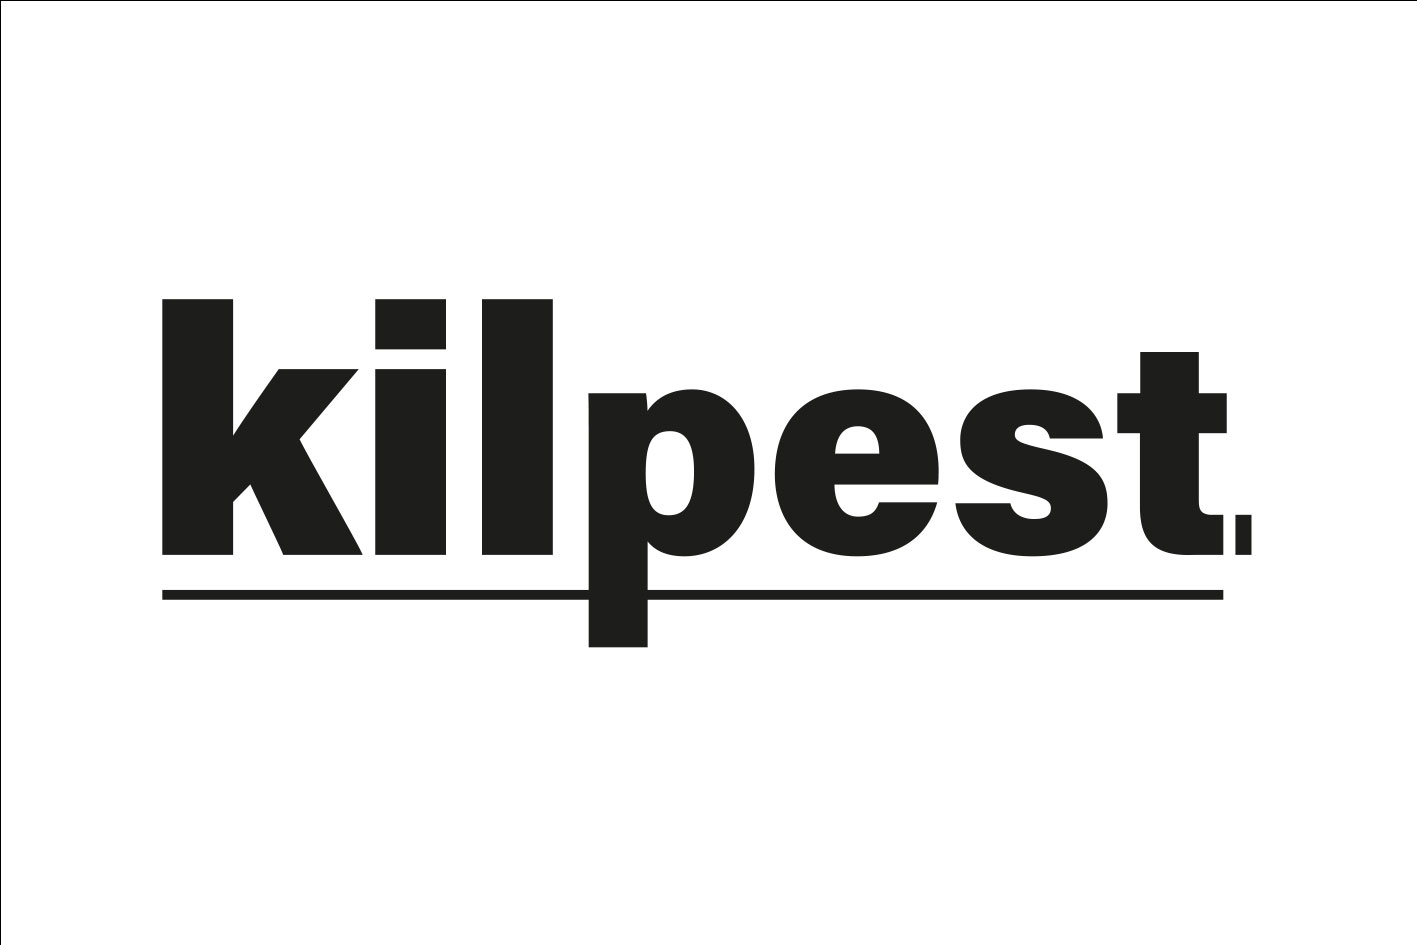 Kilpest, expert antinuisibles. Logo typographique en couleurs noir sur fond blanc